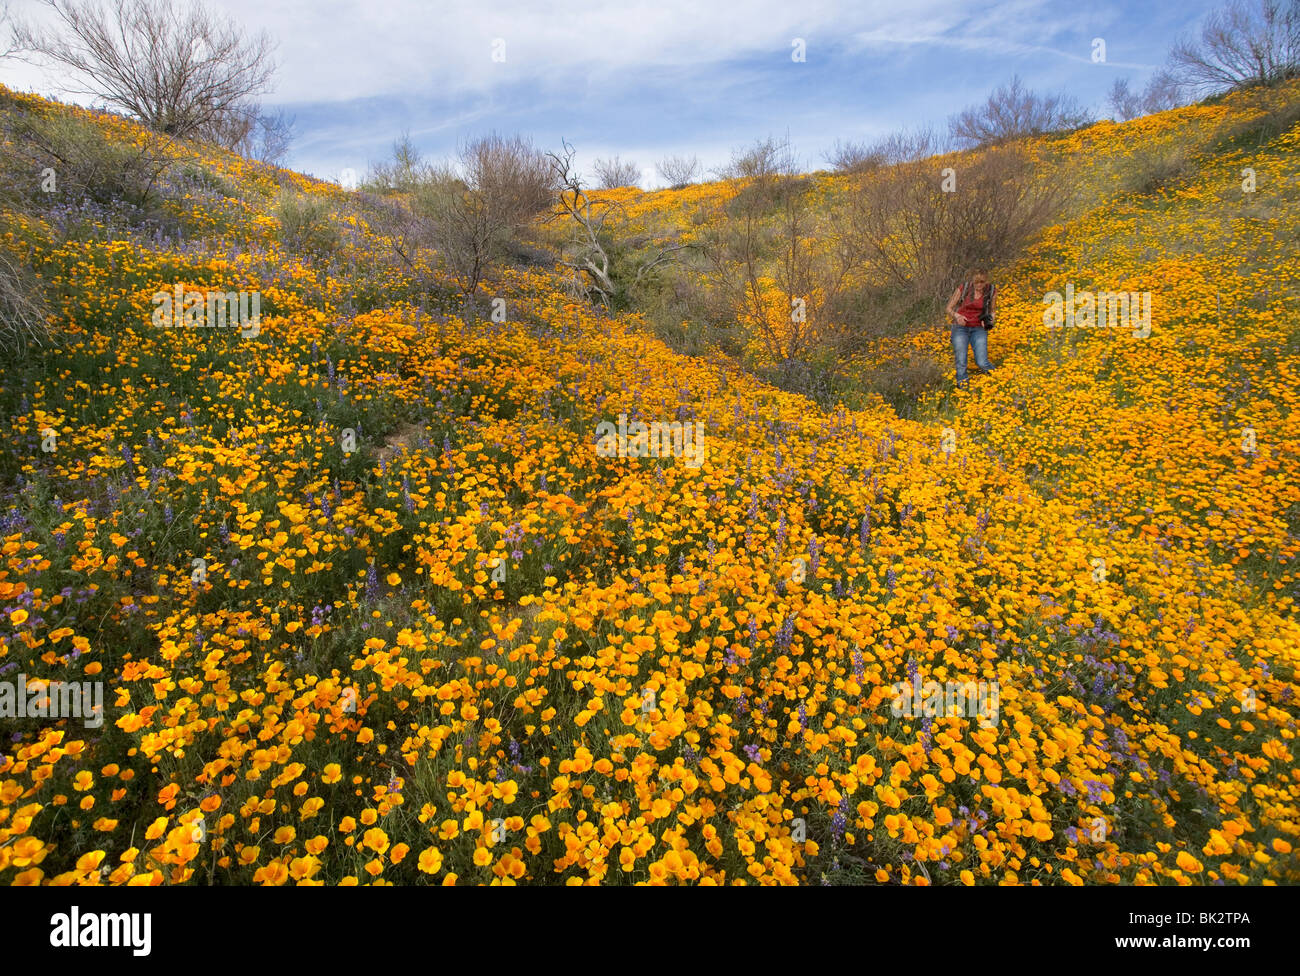 Un gran campo de naranja y amarillo, las amapolas y flores silvestres que continúa indefinidamente. Una mujer fotógrafo camina entre ellos. Foto de stock